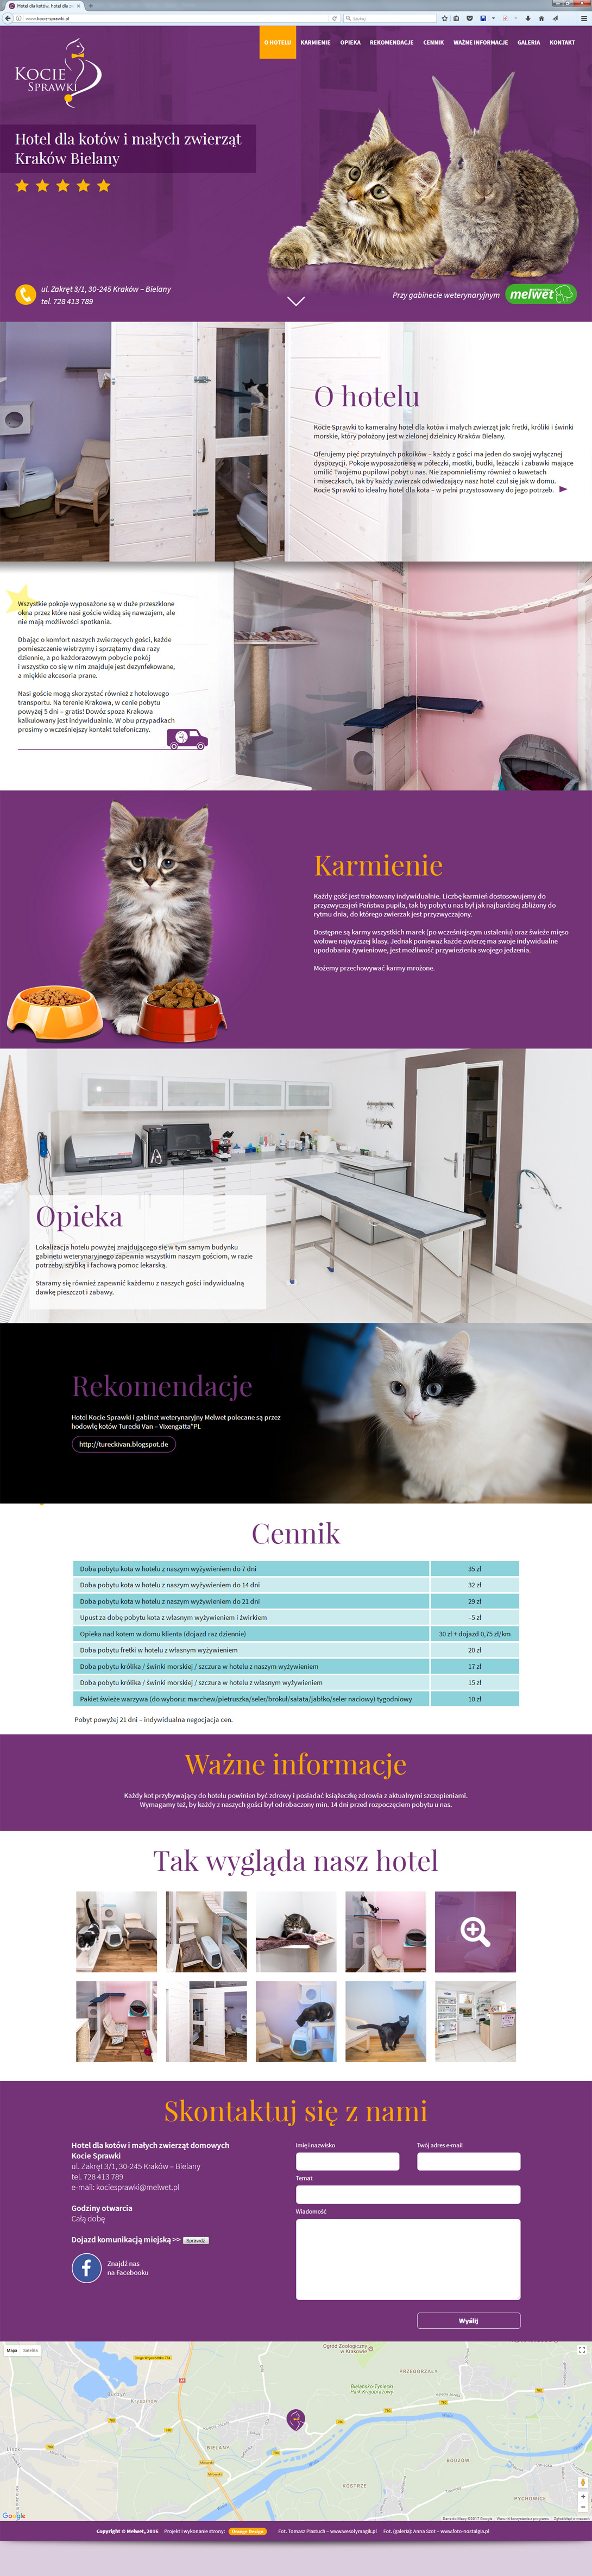 strona www hotelu dla kotów i małych zwierząt domowych